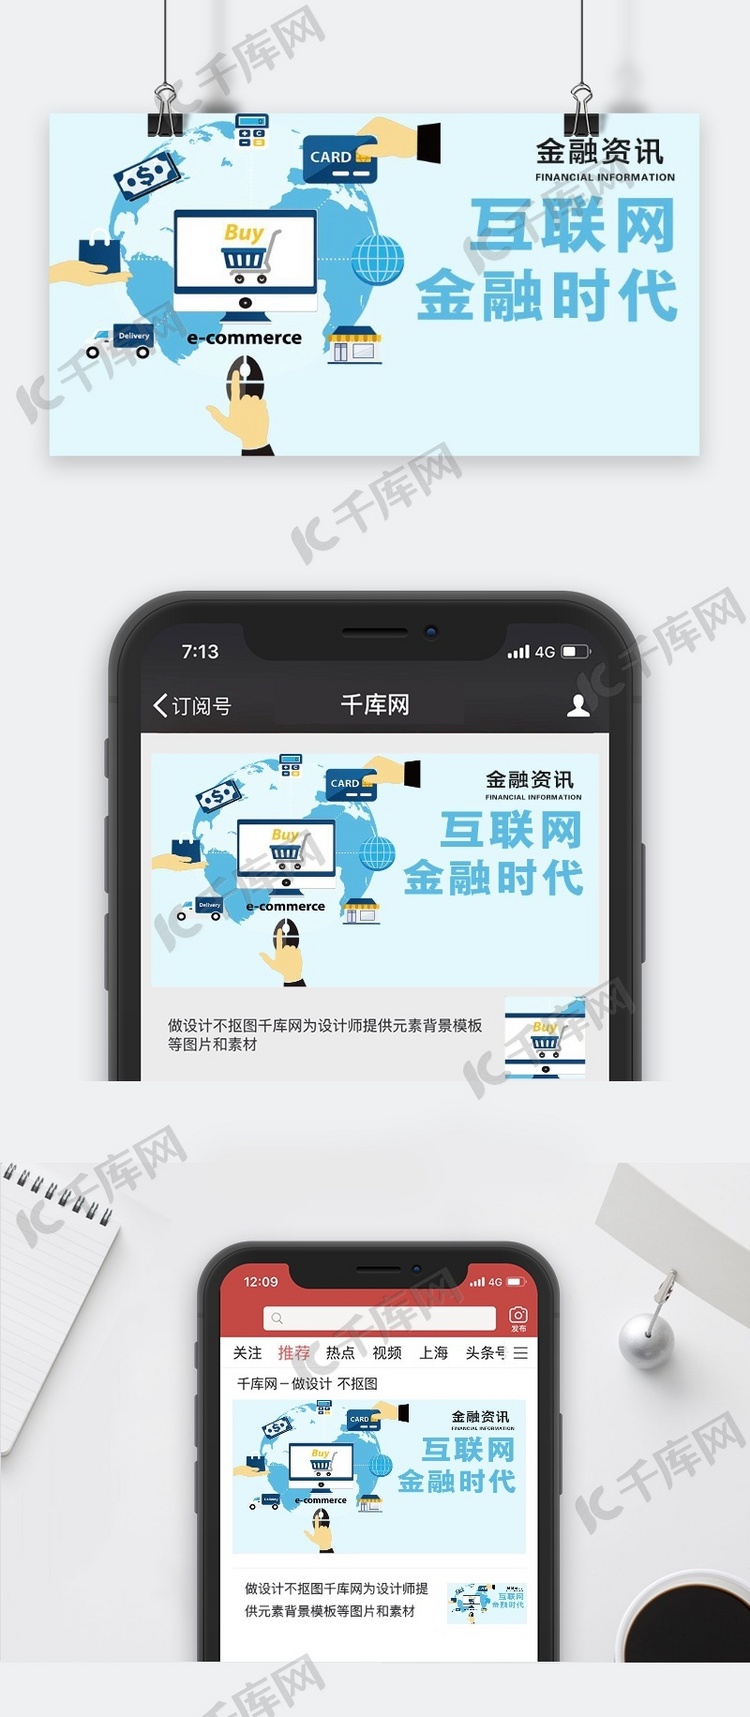 千库原创金融资讯微信公众号封面图